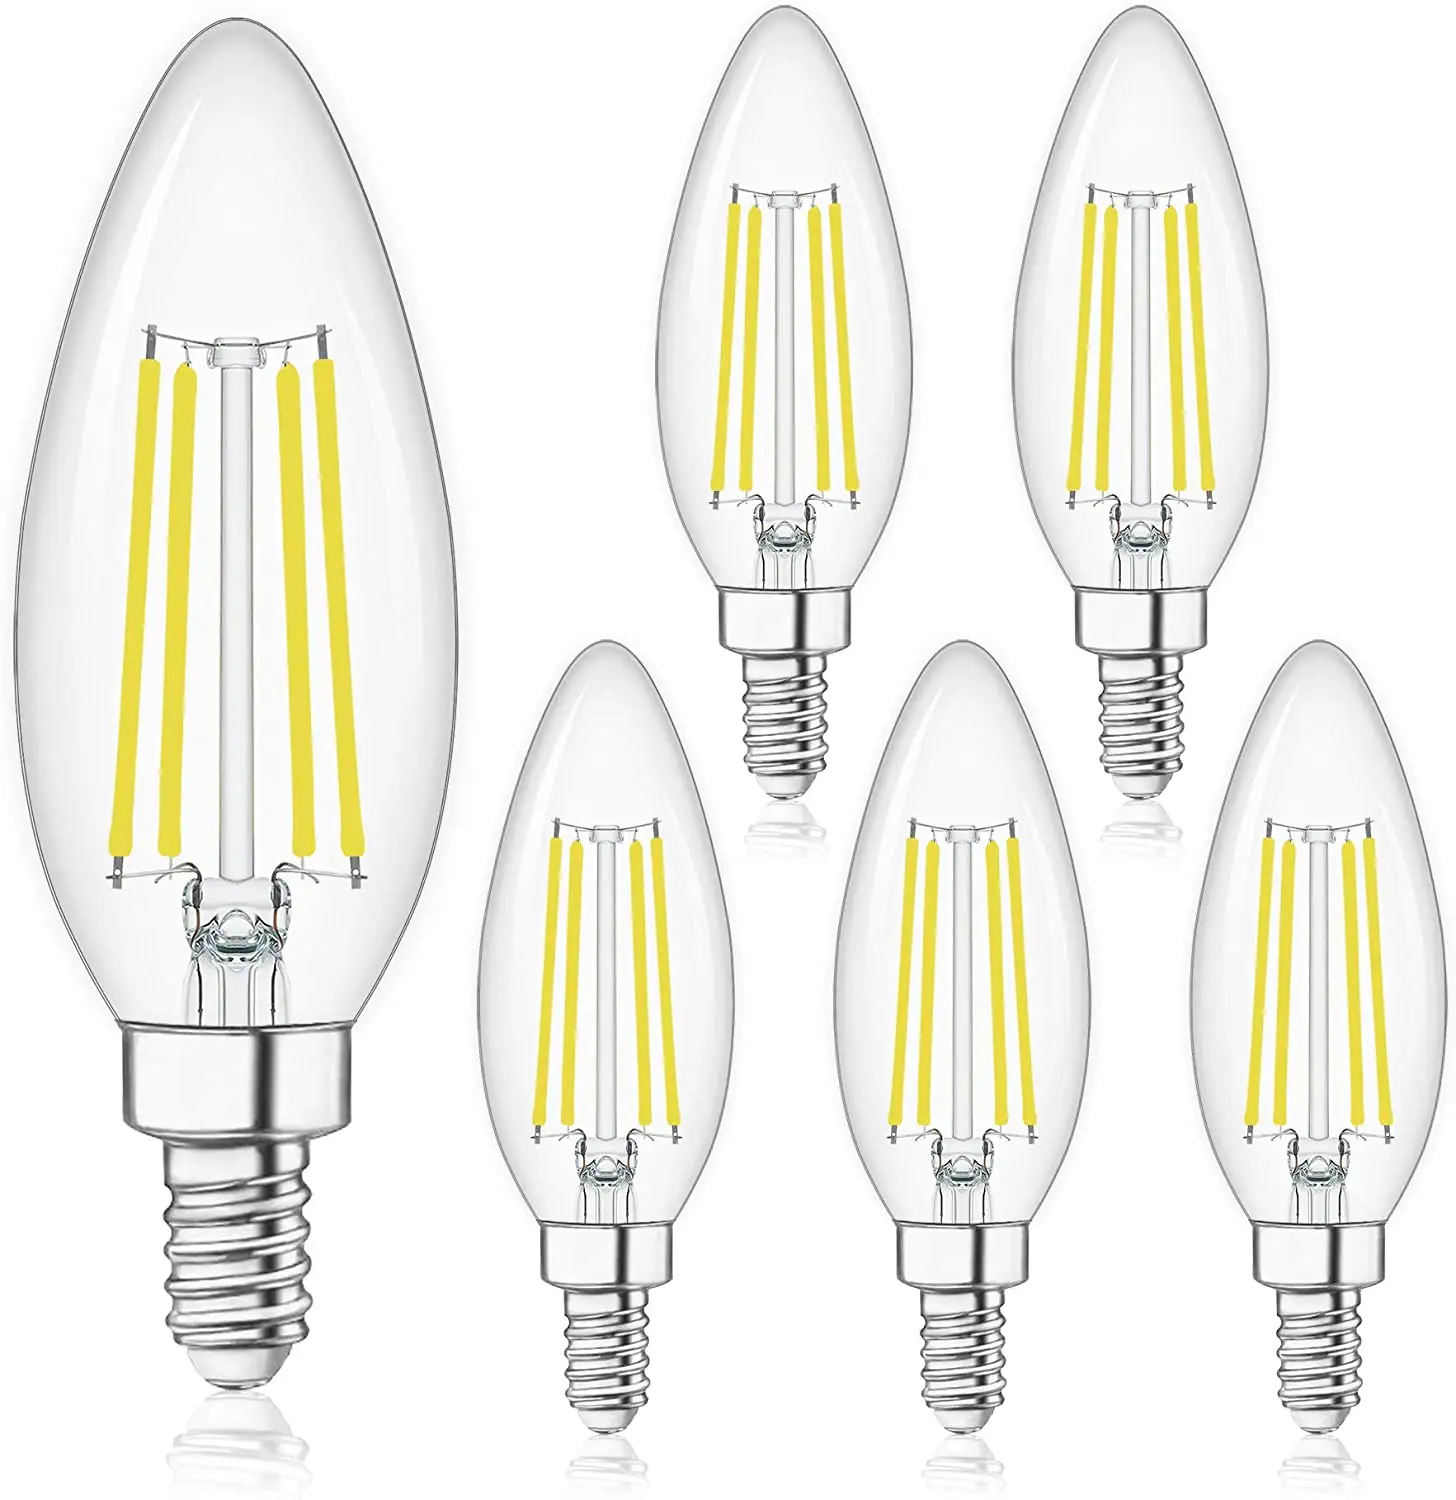 Candelabros lâmpadas de led reguláveis 2w 4w 5w e12 e14 b22 e26 e27